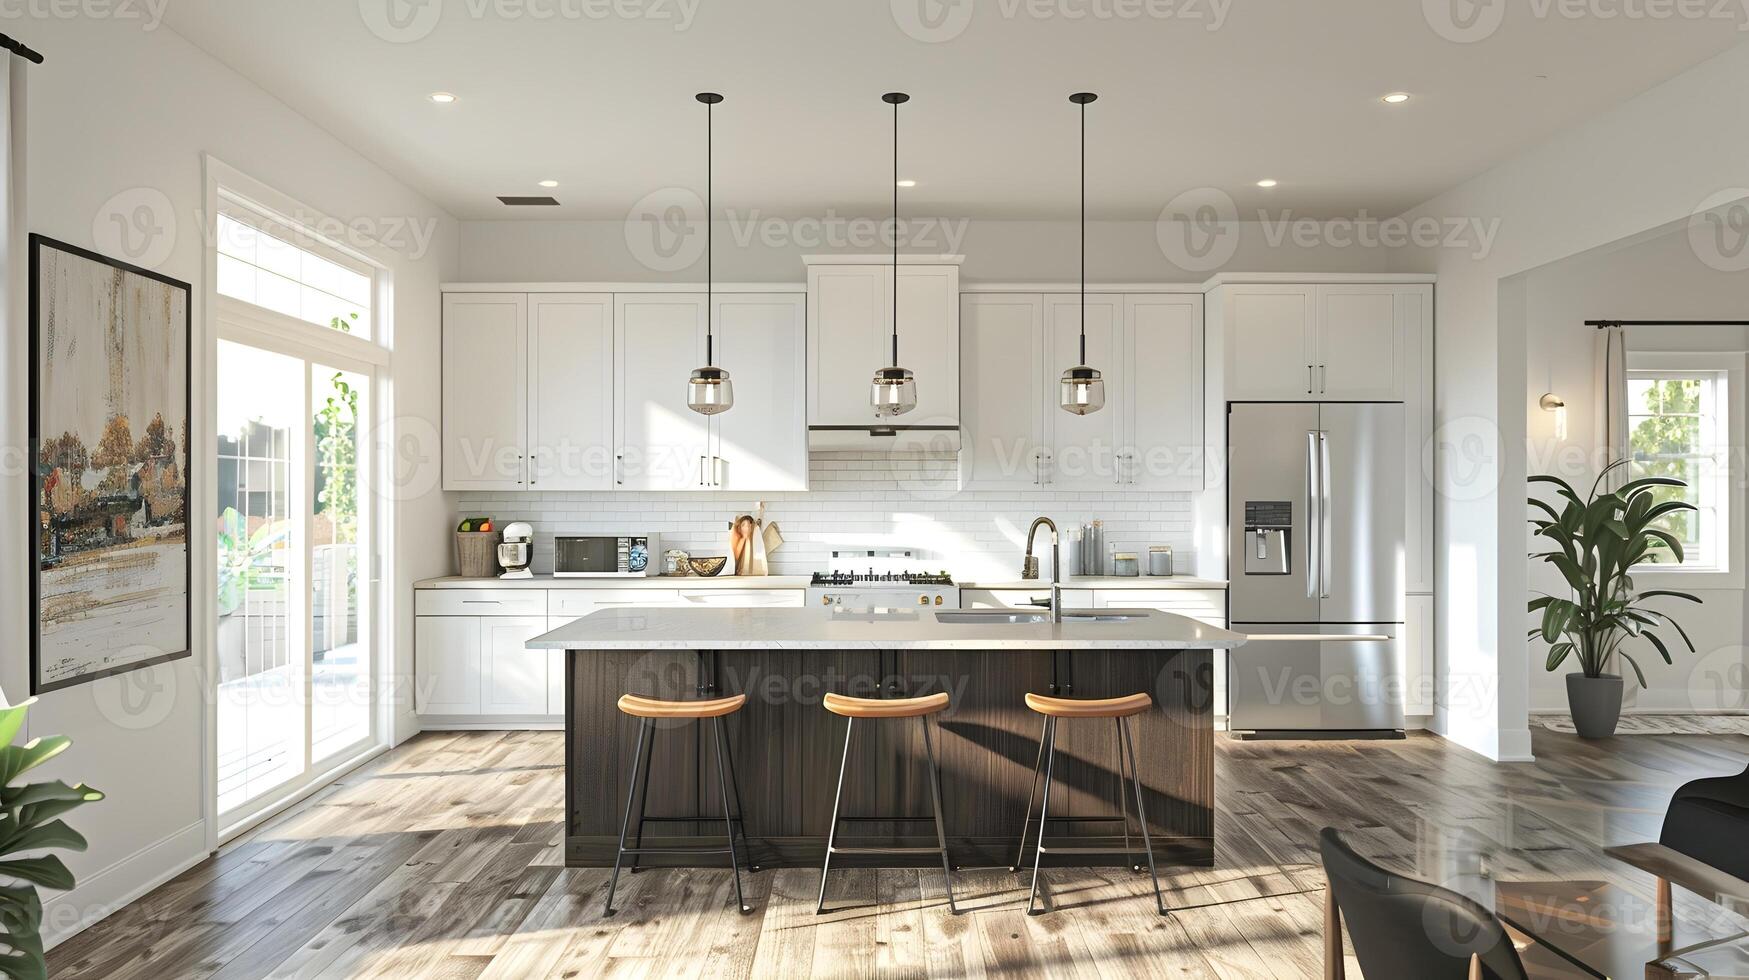 elegante y funcional moderno cocina con madera dura pisos, elegantes electrodomésticos, y elegante Encendiendo accesorios foto